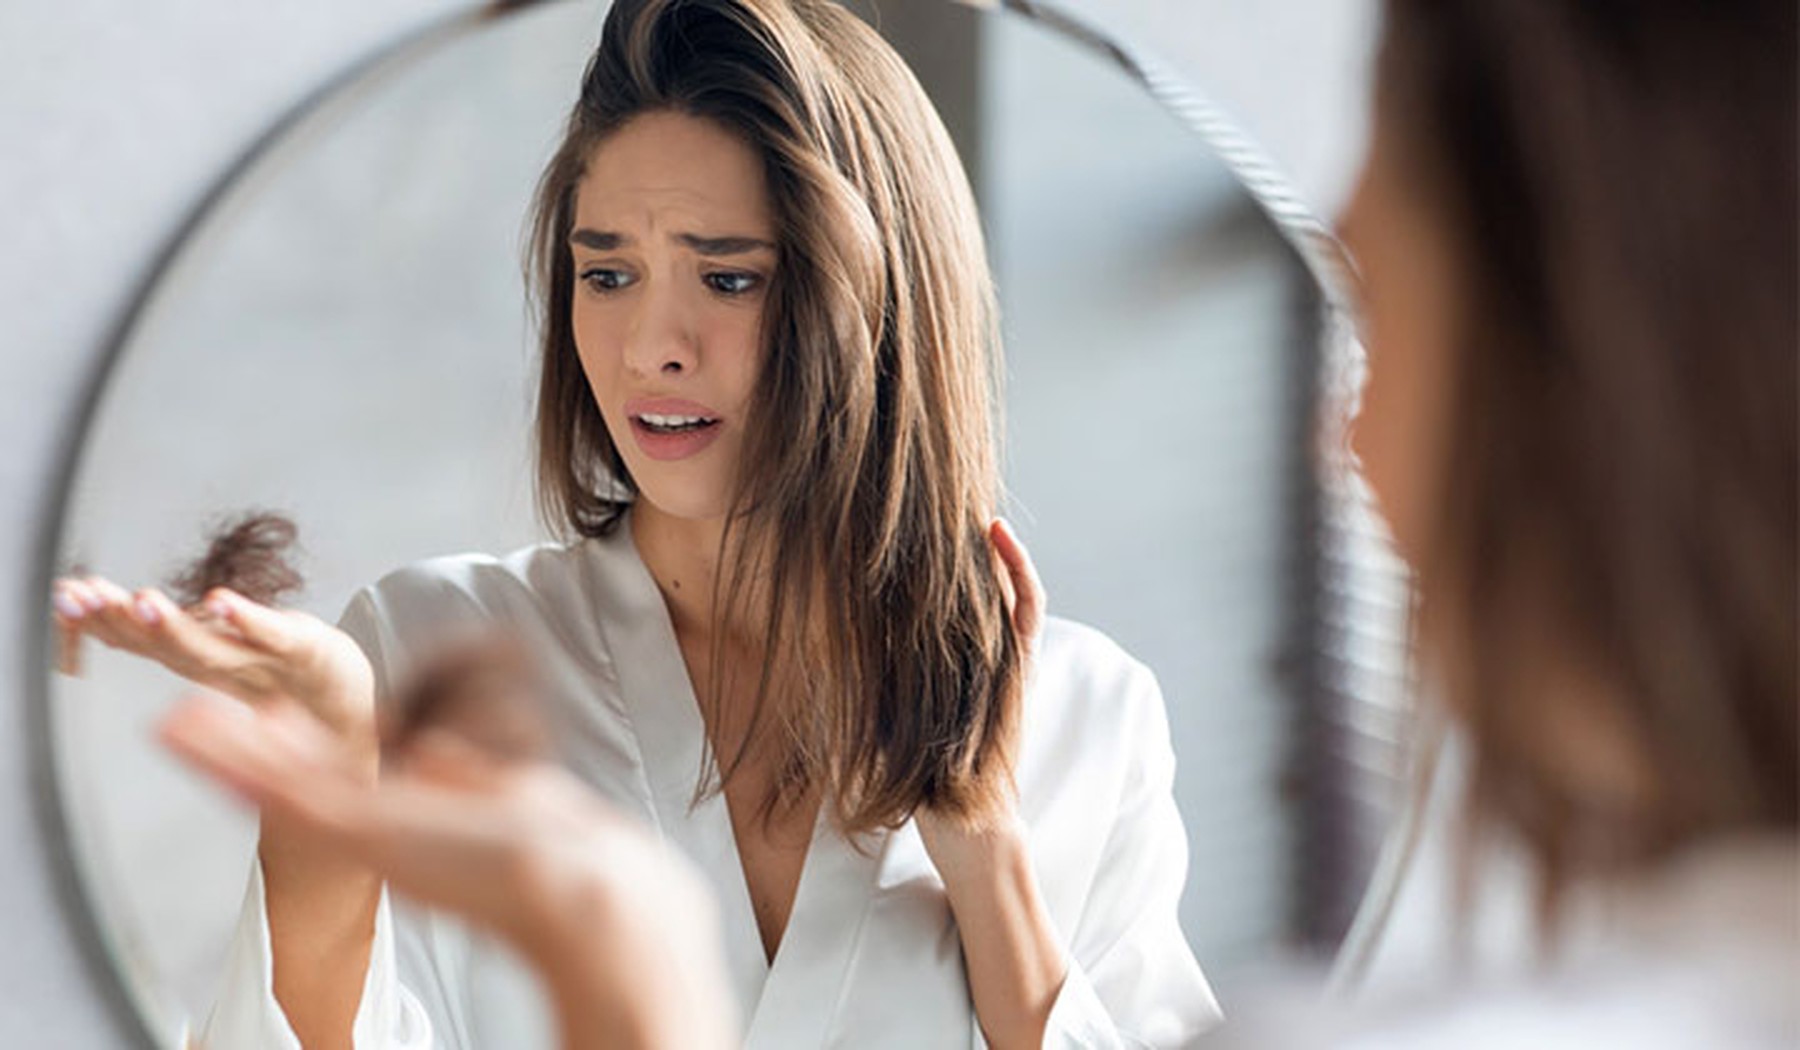 Mujer triste mirando un mechón de pelo en su mano frente a un espejo